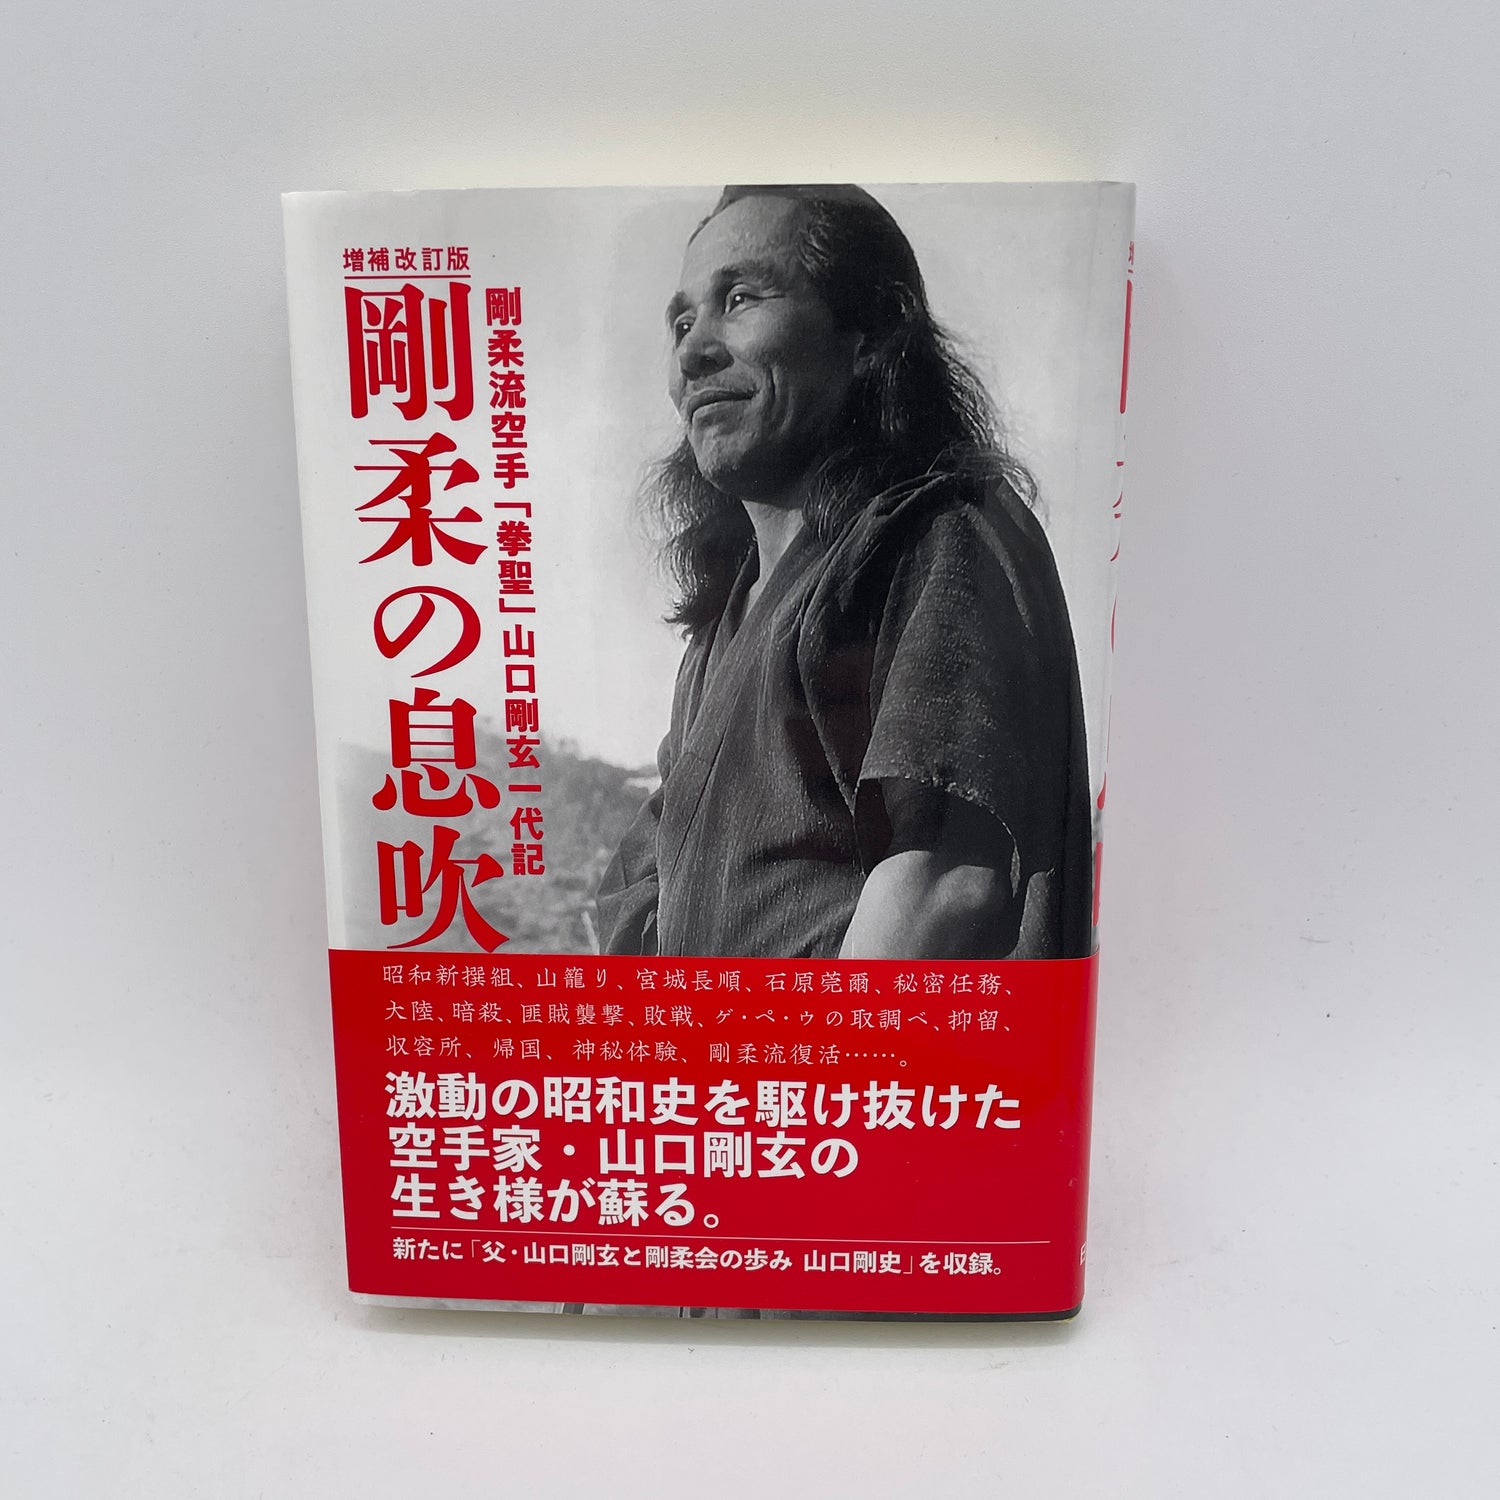 The Breath of Goju Ryu Karate (Revised) Book by Gogen Yamaguchi